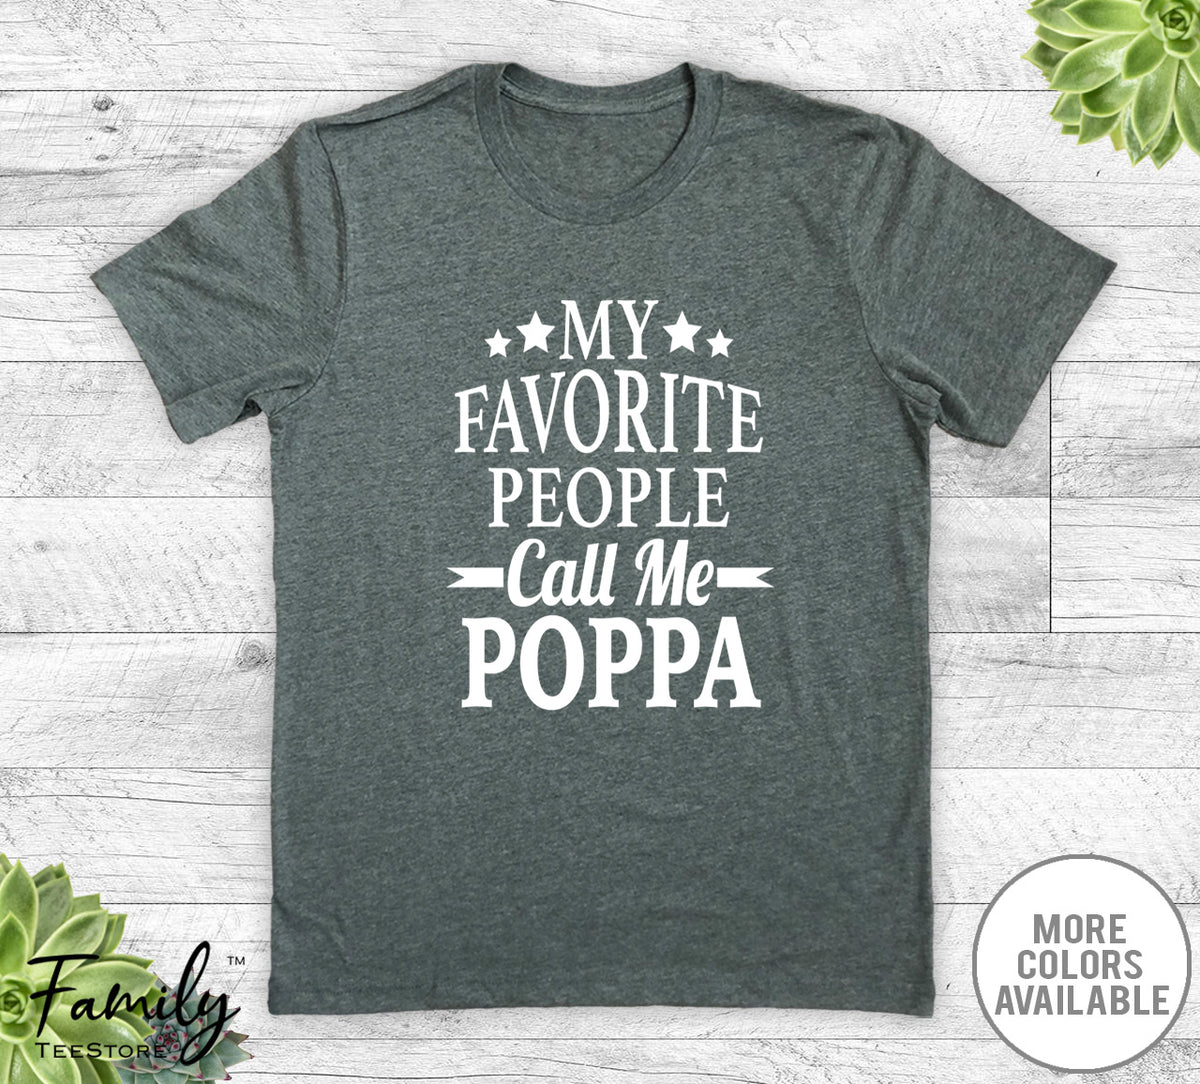 My Favorite People Call Me Poppa - Unisex T-shirt - Poppa Shirt - Poppa Gift